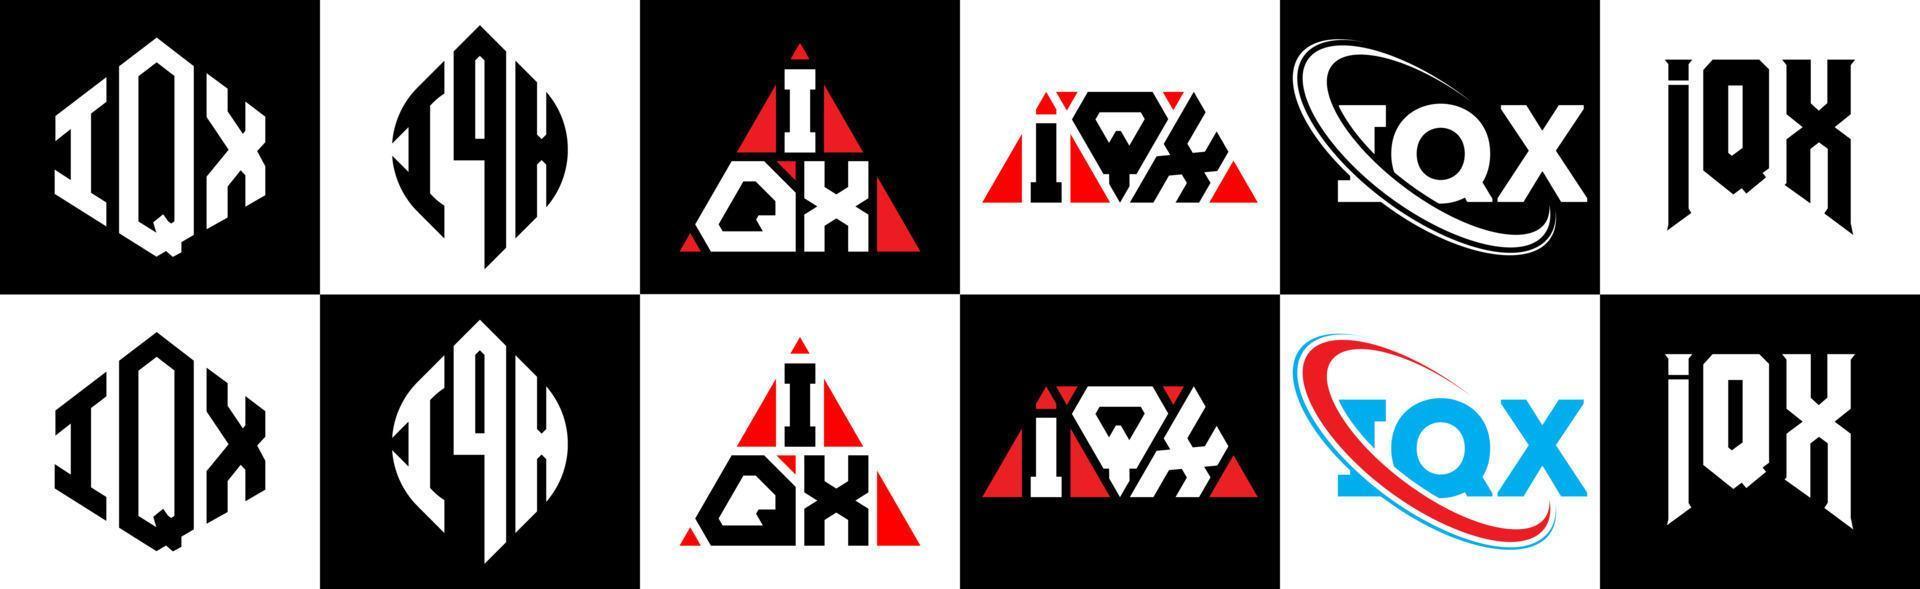 iqx lettera logo design nel sei stile. iqx poligono, cerchio, triangolo, esagono, piatto e semplice stile con nero e bianca colore variazione lettera logo impostato nel uno tavola da disegno. iqx minimalista e classico logo vettore